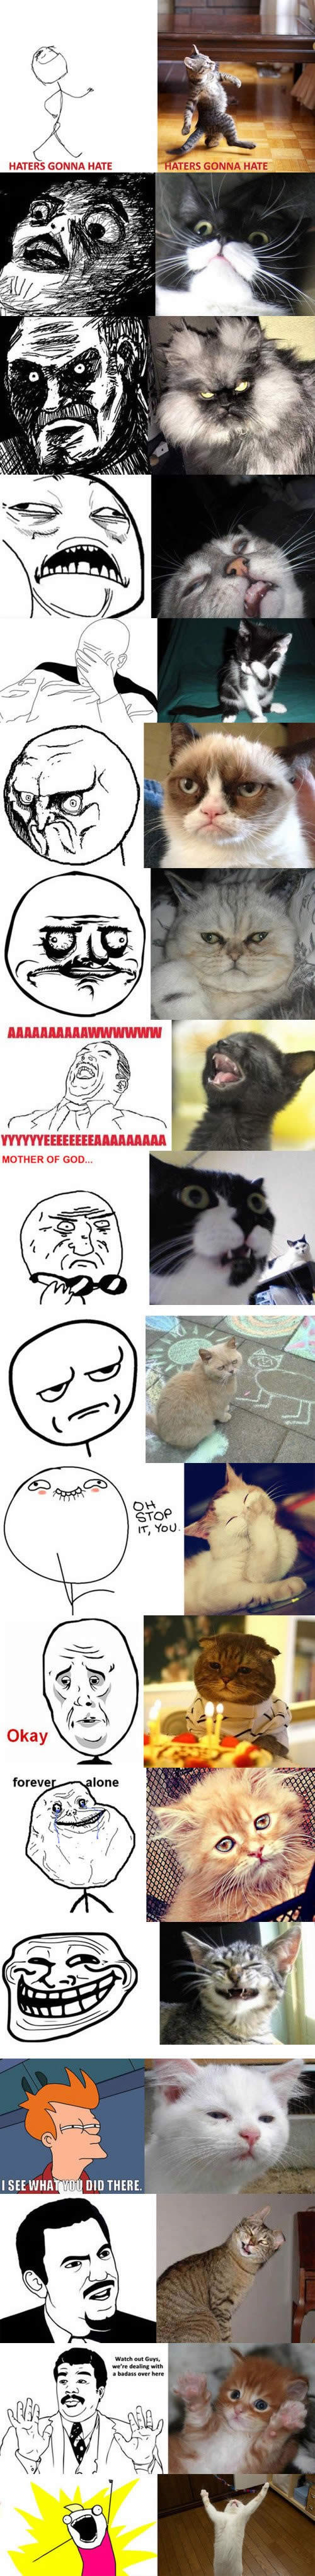 Memes x Gatos